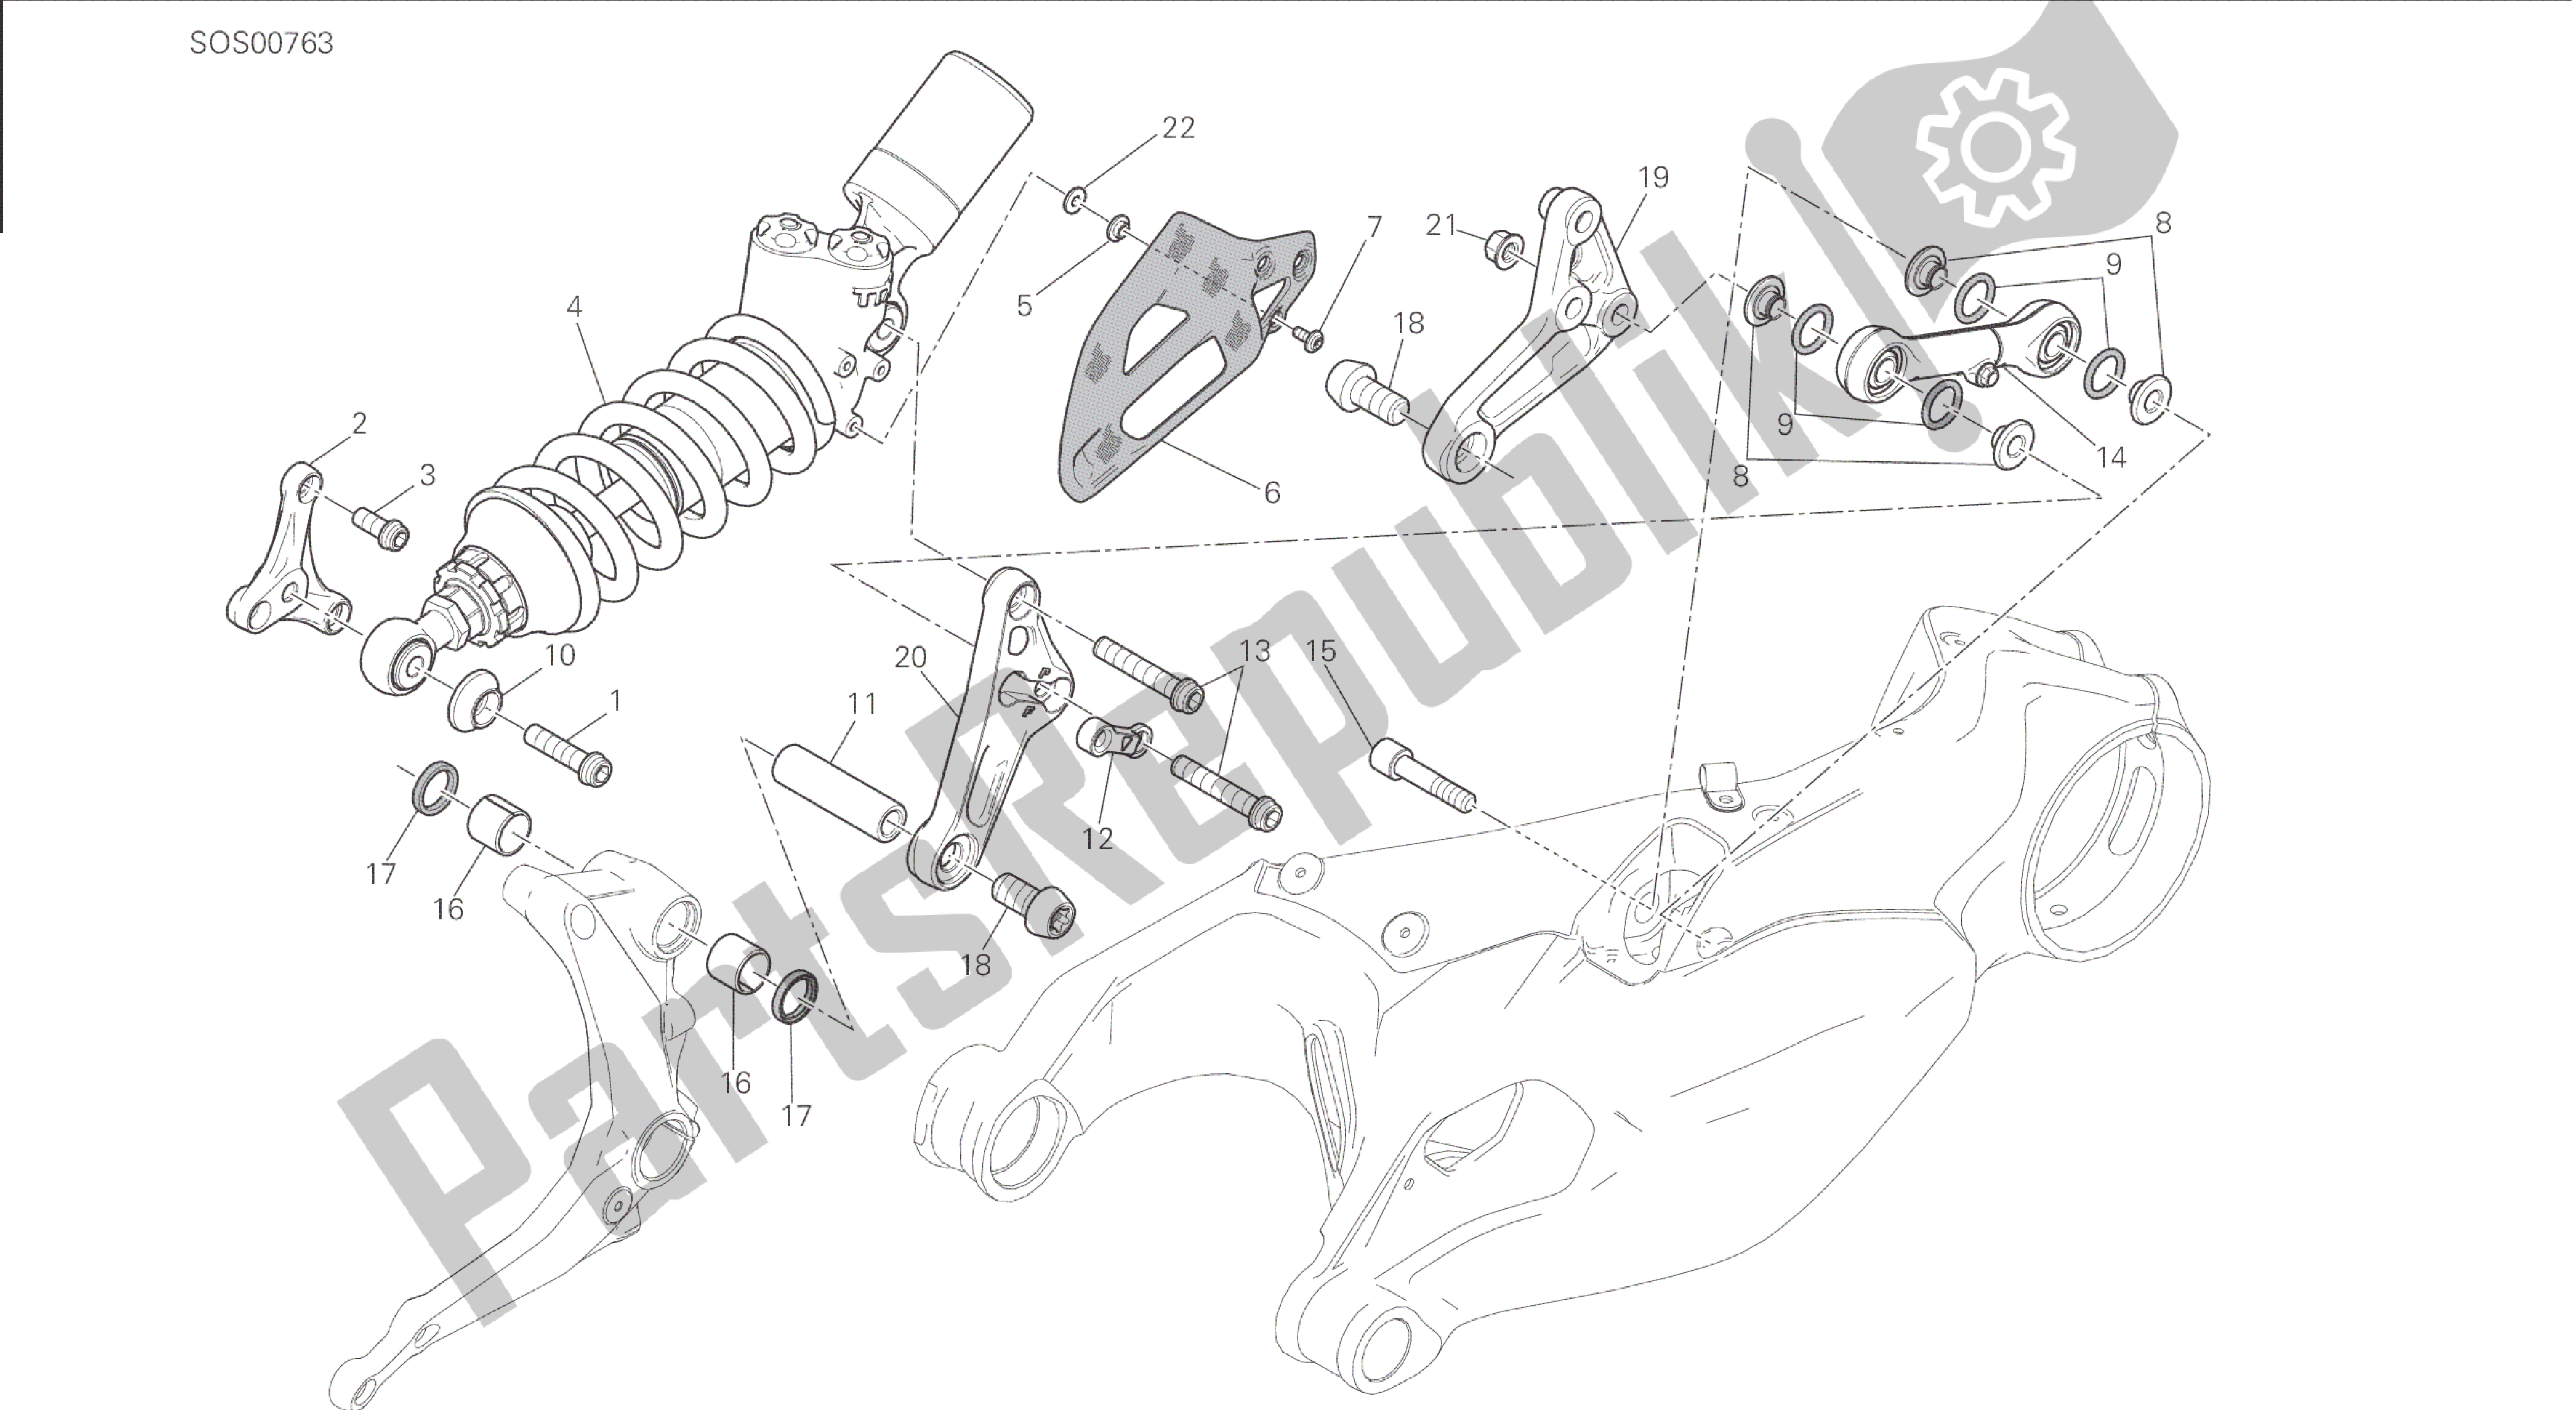 Todas las partes para Dibujo 028 - Sospensione Posteriore [mod: 1199 R; Xst: Marco De Grupo Aus, Eur, Fra, Jap, Twn] de Ducati Panigale 1198 2015